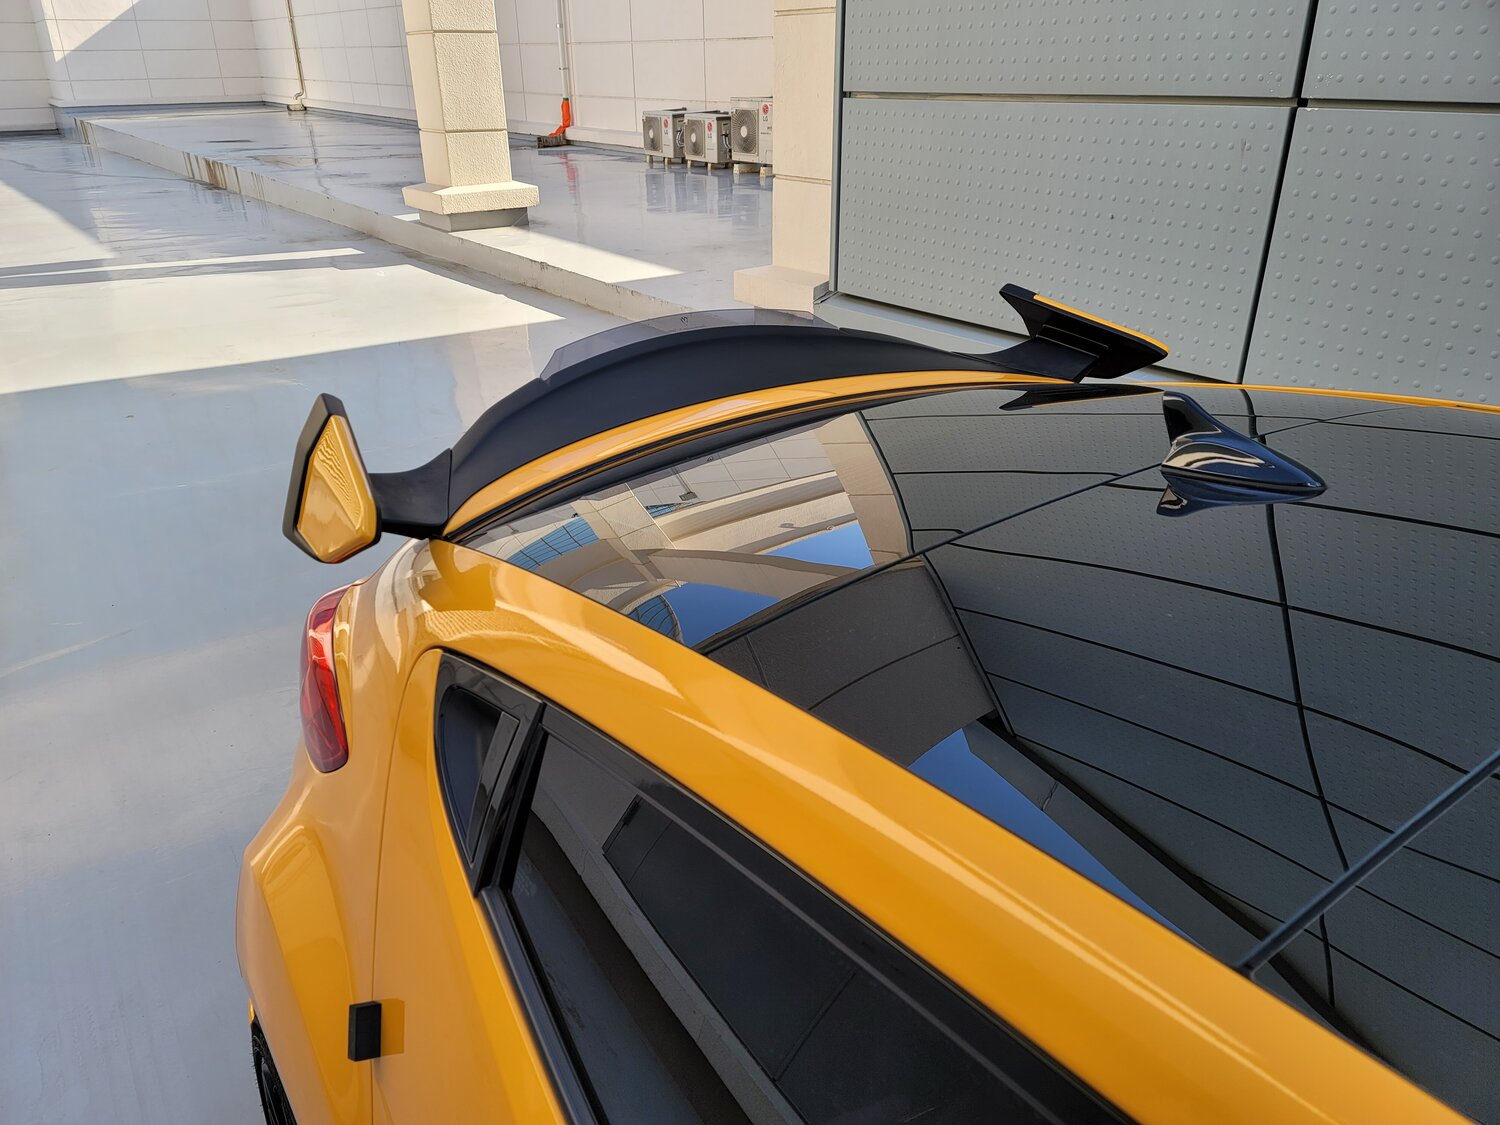 M&S R4TEN Wicker Duckbill Spoiler with Side Wing Option for Hyundai Veloster Turbo (FS)